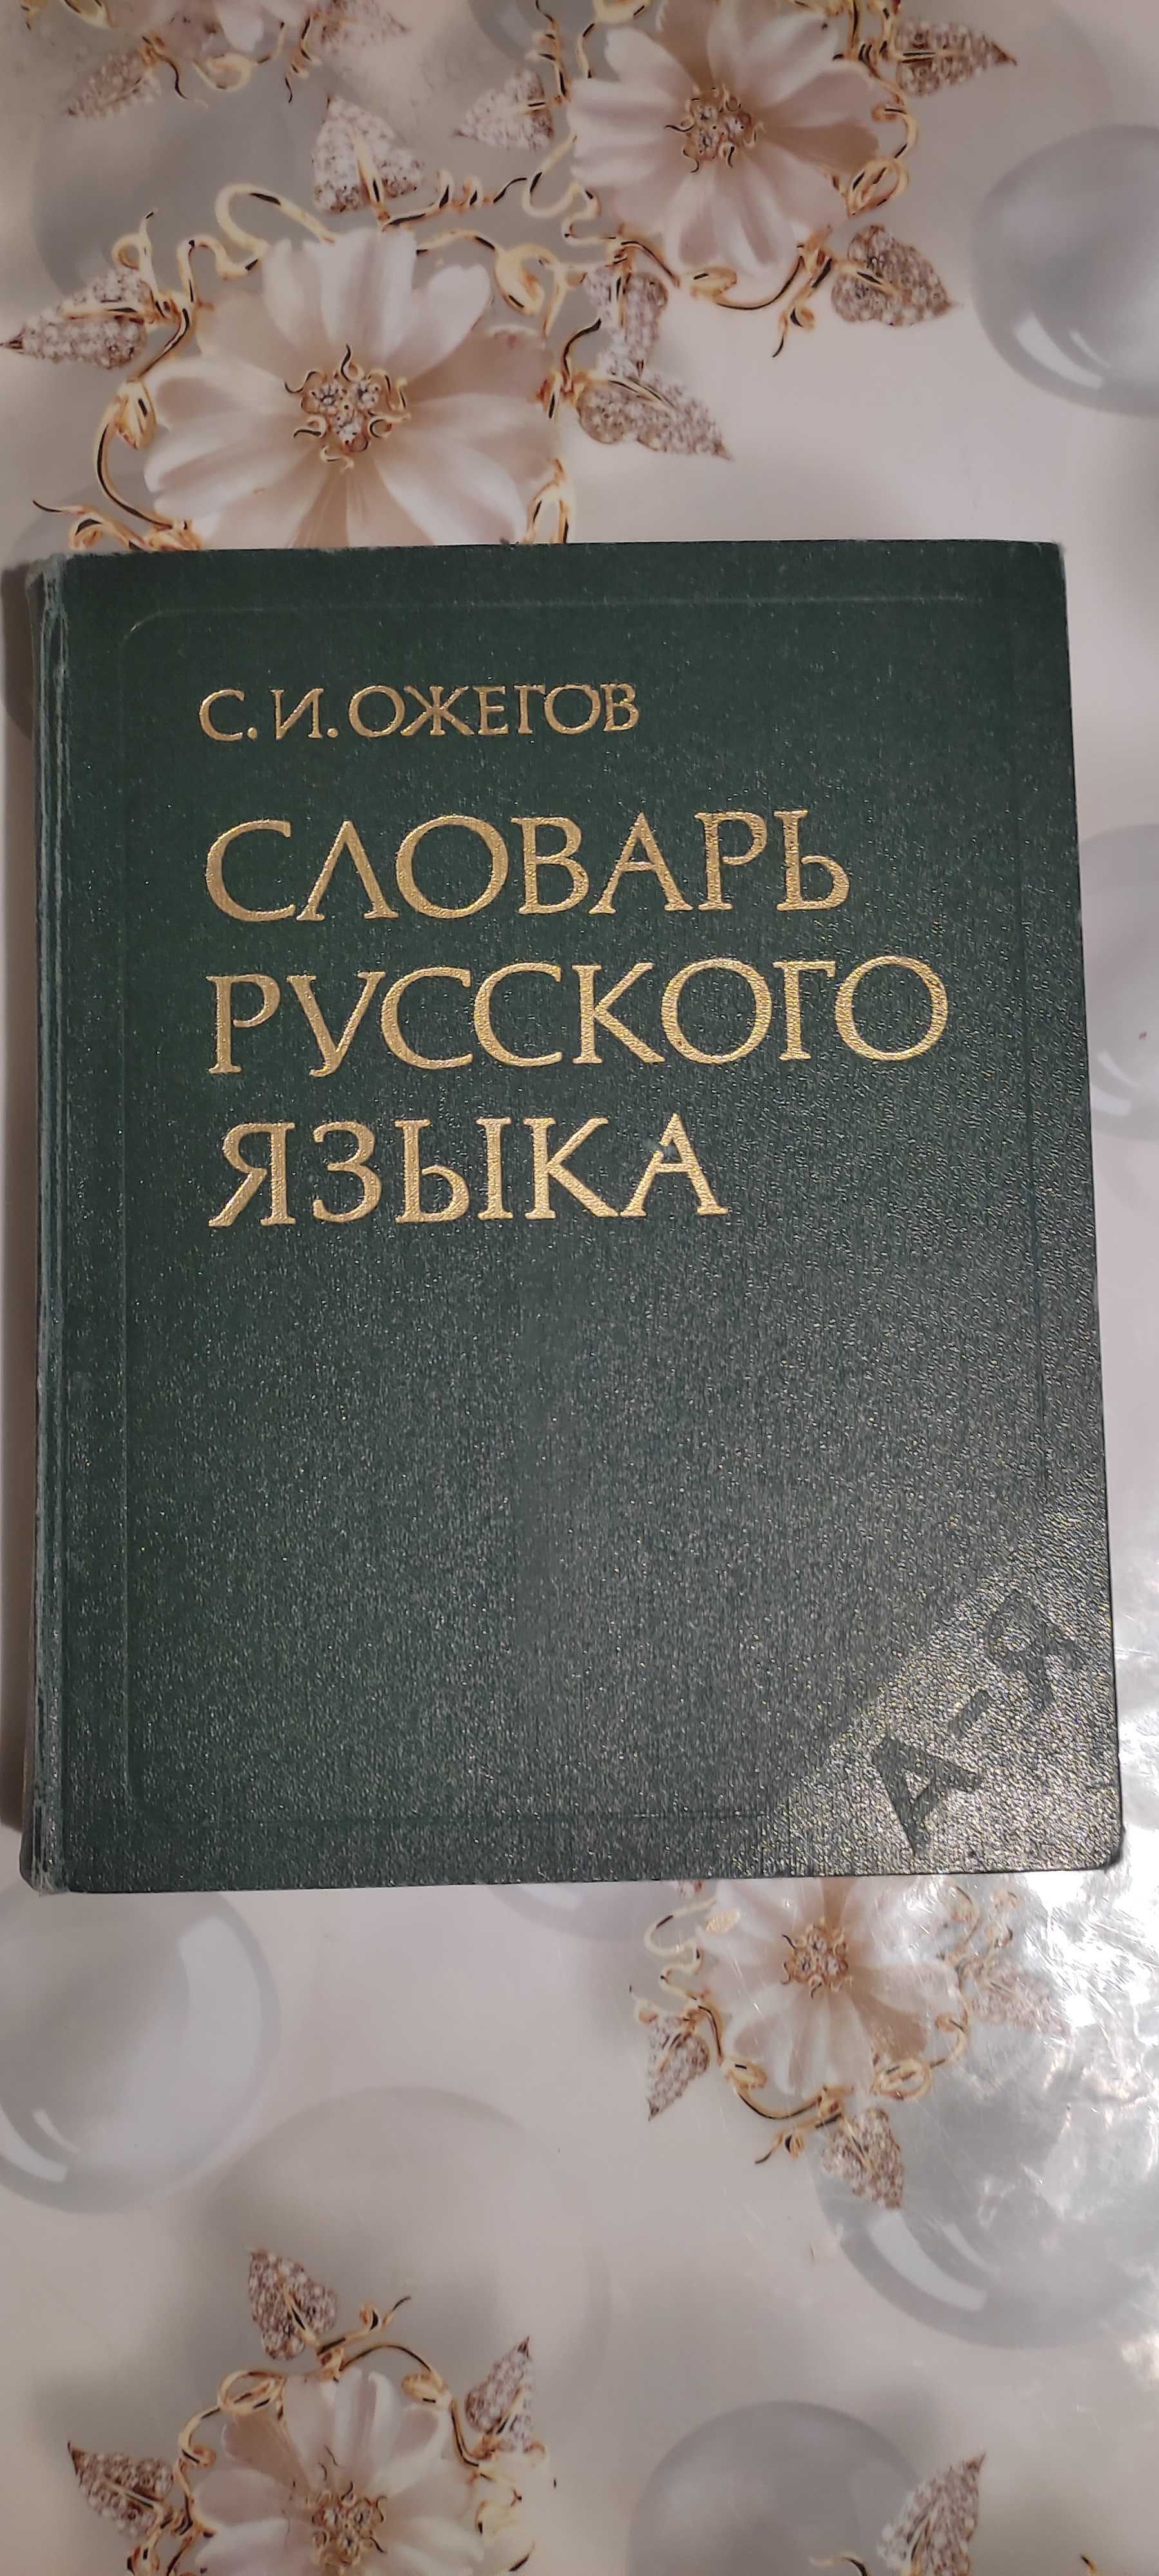 Словарь русского языка создан советским лингвистом С. И. Ожеговым.